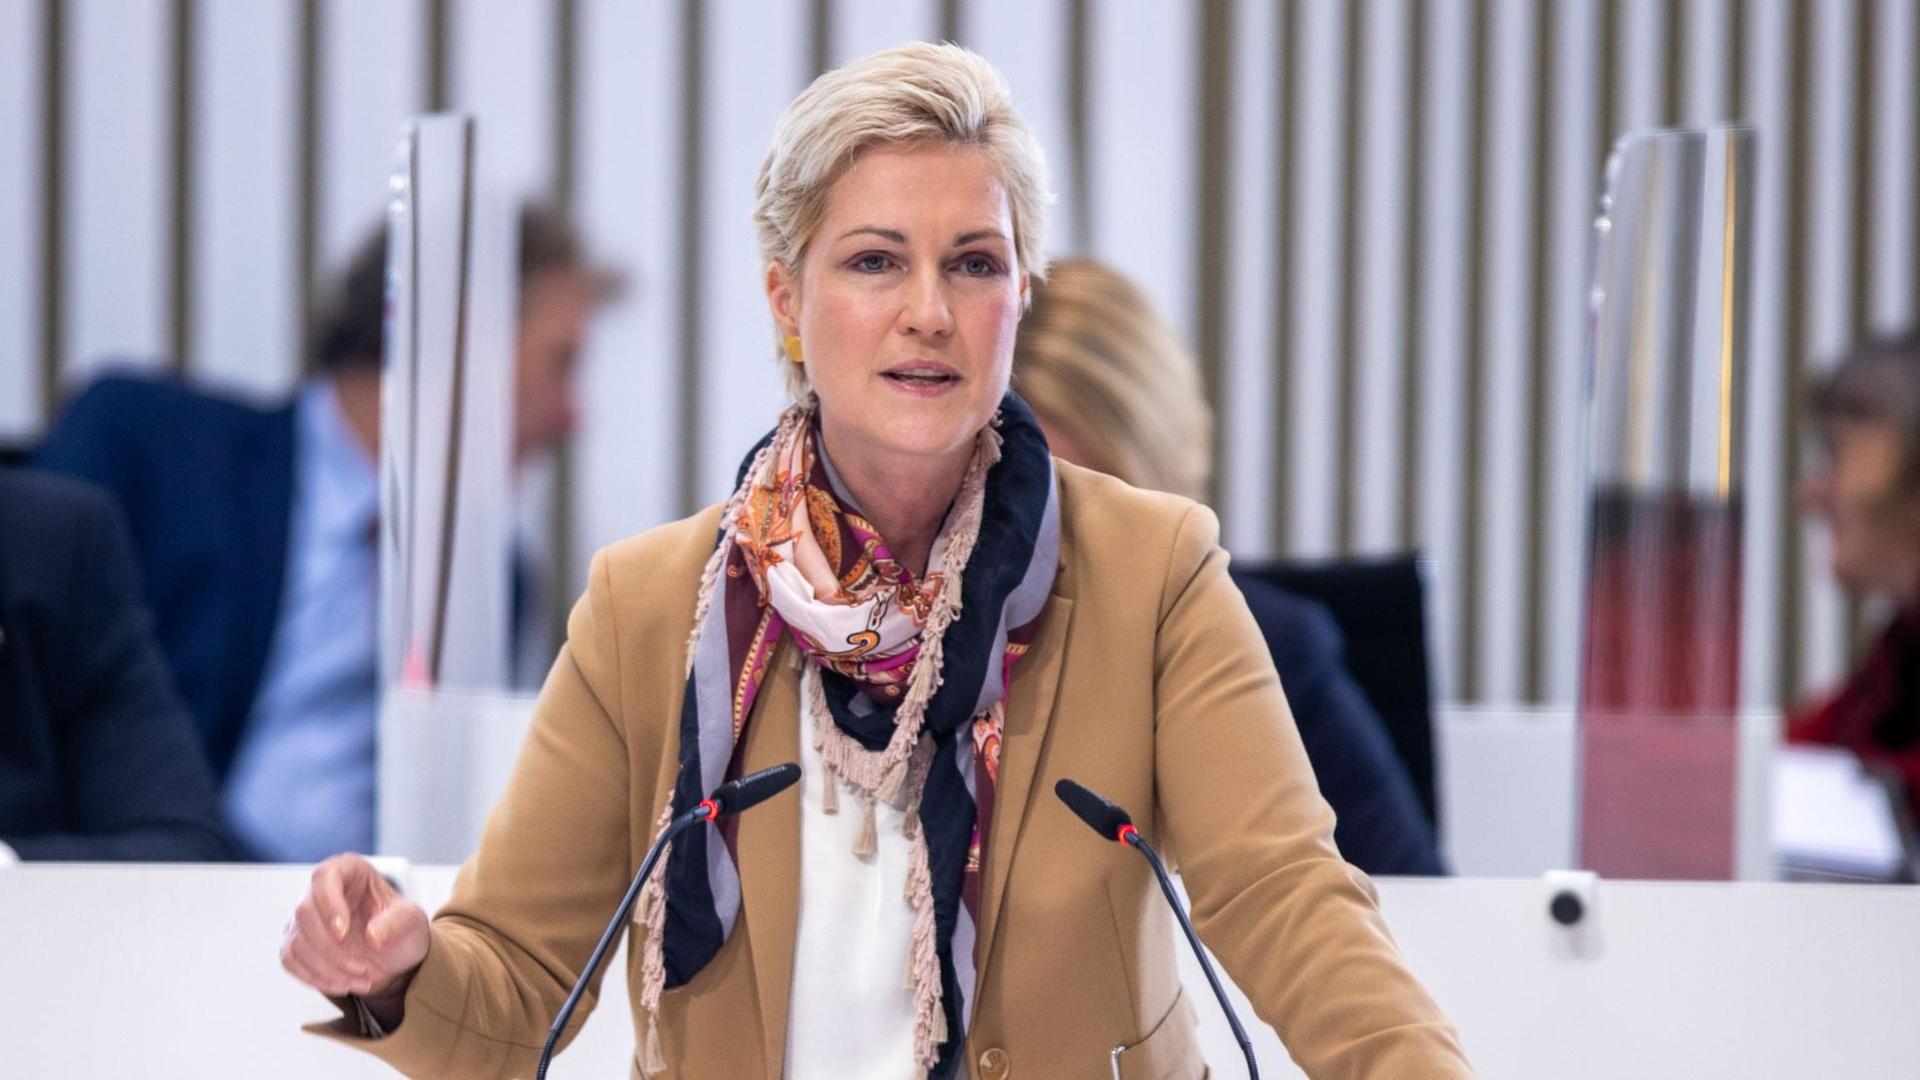 Manuela Schwesig (SPD), Ministerpräsidentin von Mecklenburg-Vorpommern, spricht im Landtag zum Nachtragshaushalt der Landesregierung 2020/2021 zur Bewältigung der Folgen der Corona-Krise.